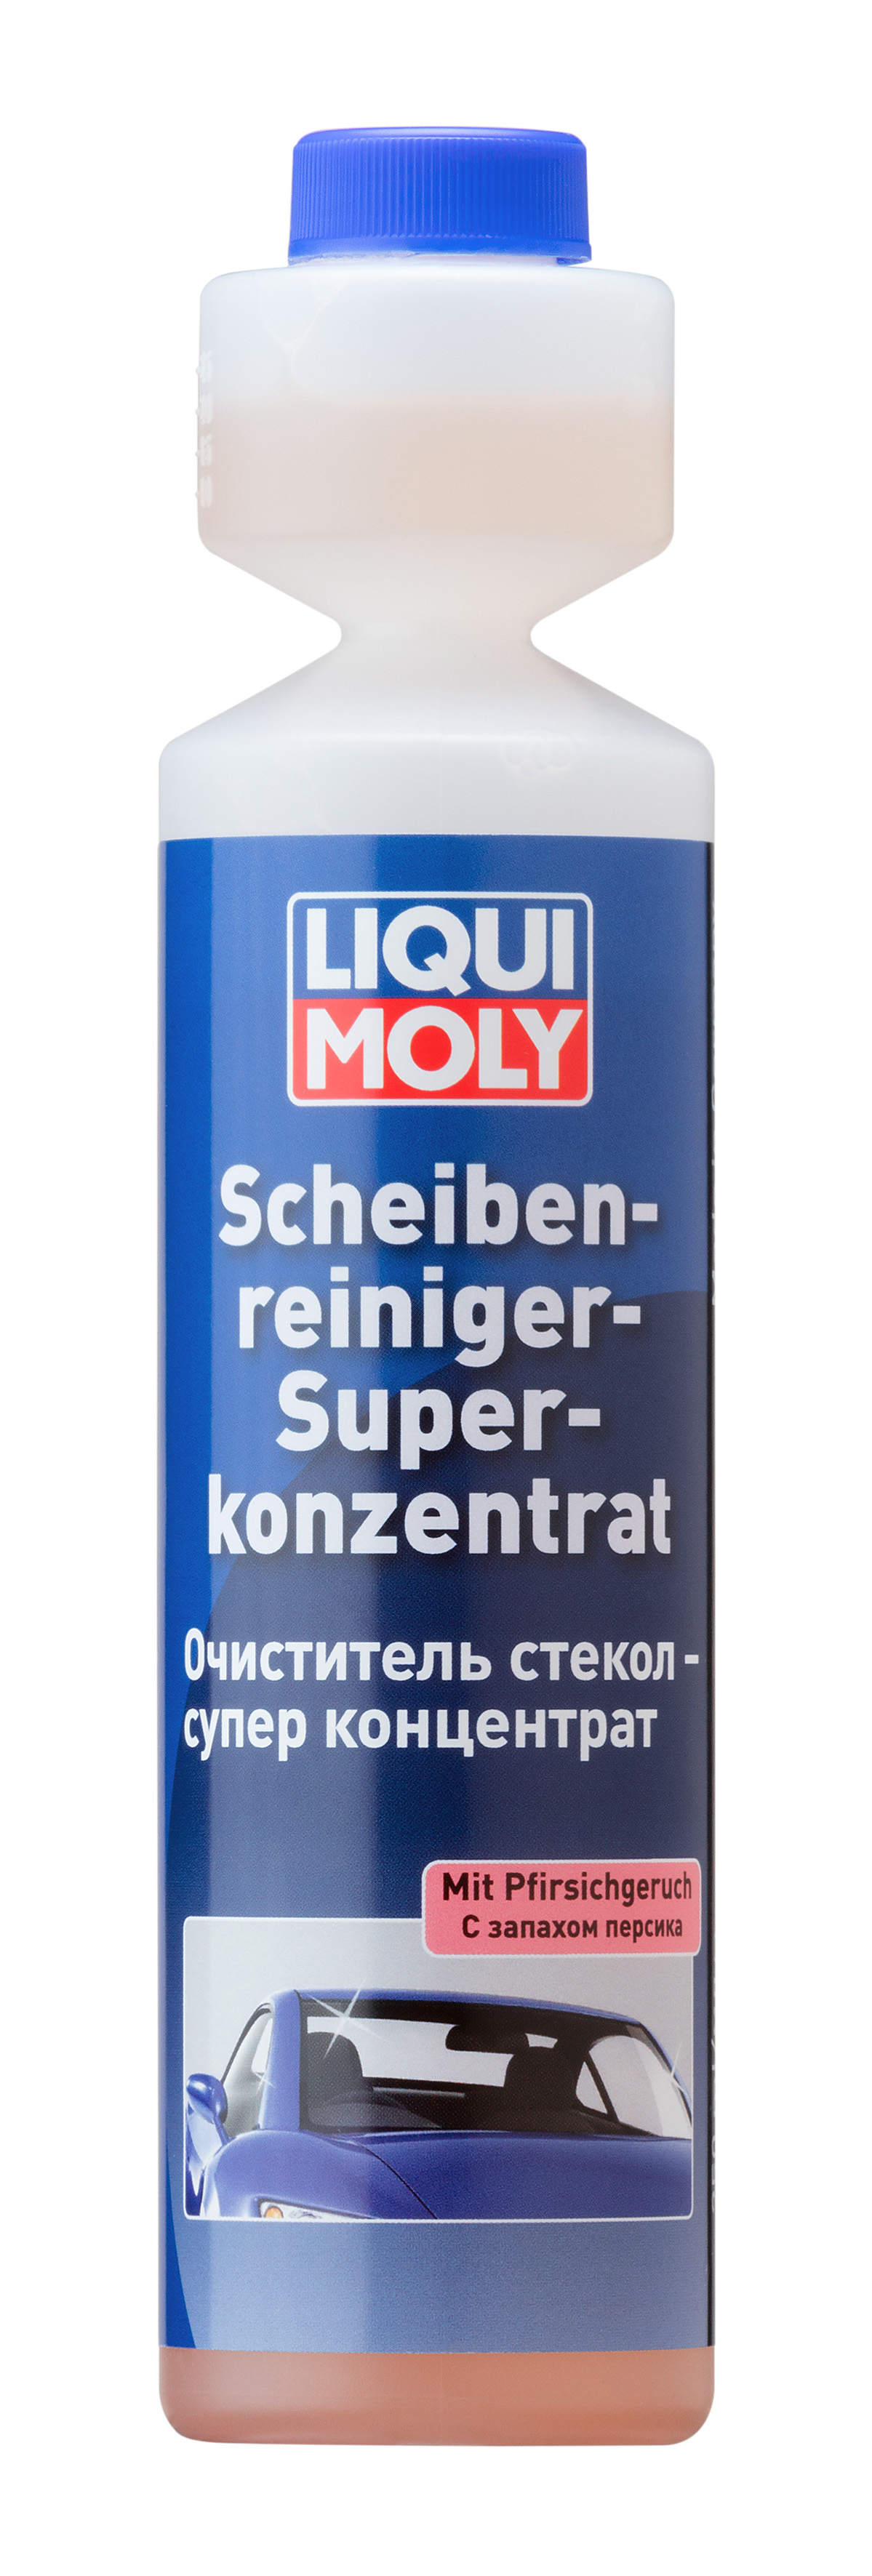 Очиститель стекол суперконцентрат Scheiben-Reiniger-Super K. 0,25л (персик) - Liqui Moly 2379